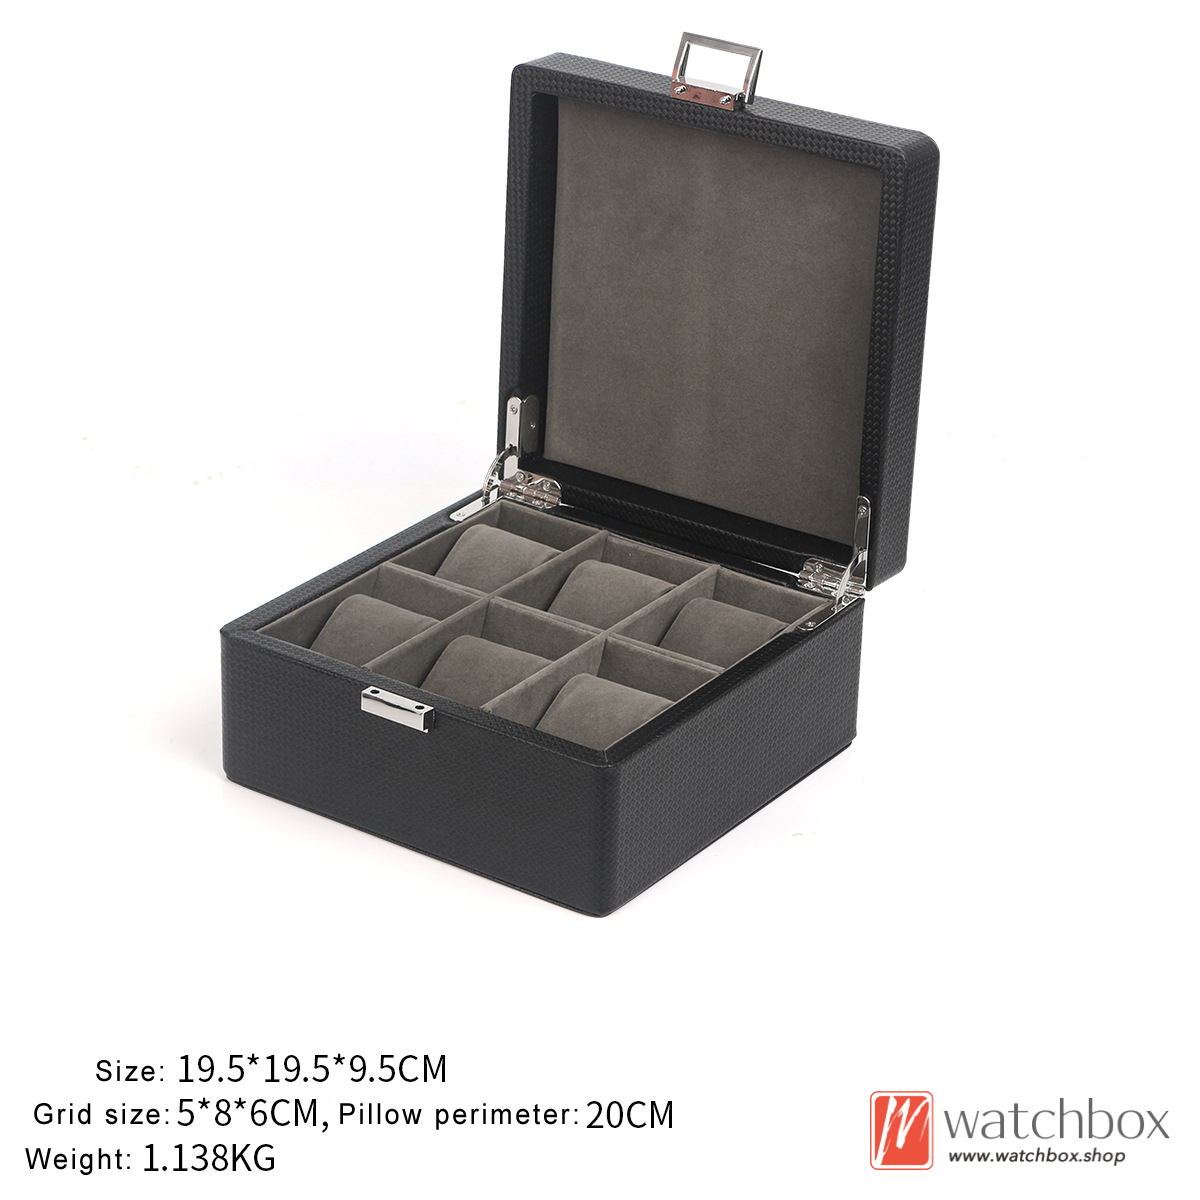 Black PU leather Watch Jewelry Case Organizer Storage Box Display Box